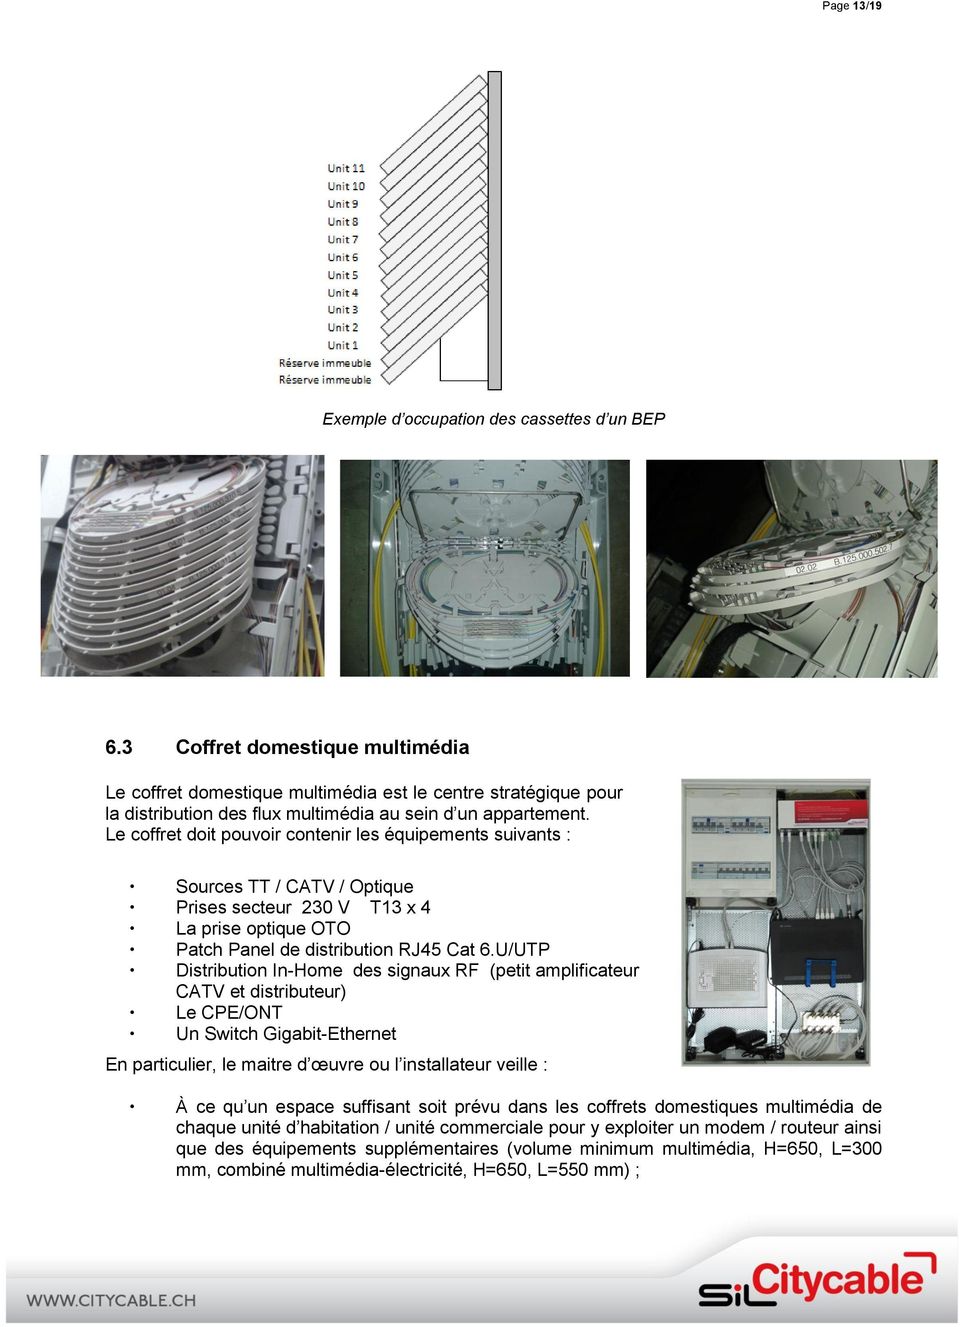 Le coffret doit pouvoir contenir les équipements suivants : Sources TT / CATV / Optique Prises secteur 230 V T13 x 4 La prise optique OTO Patch Panel de distribution RJ45 Cat 6.